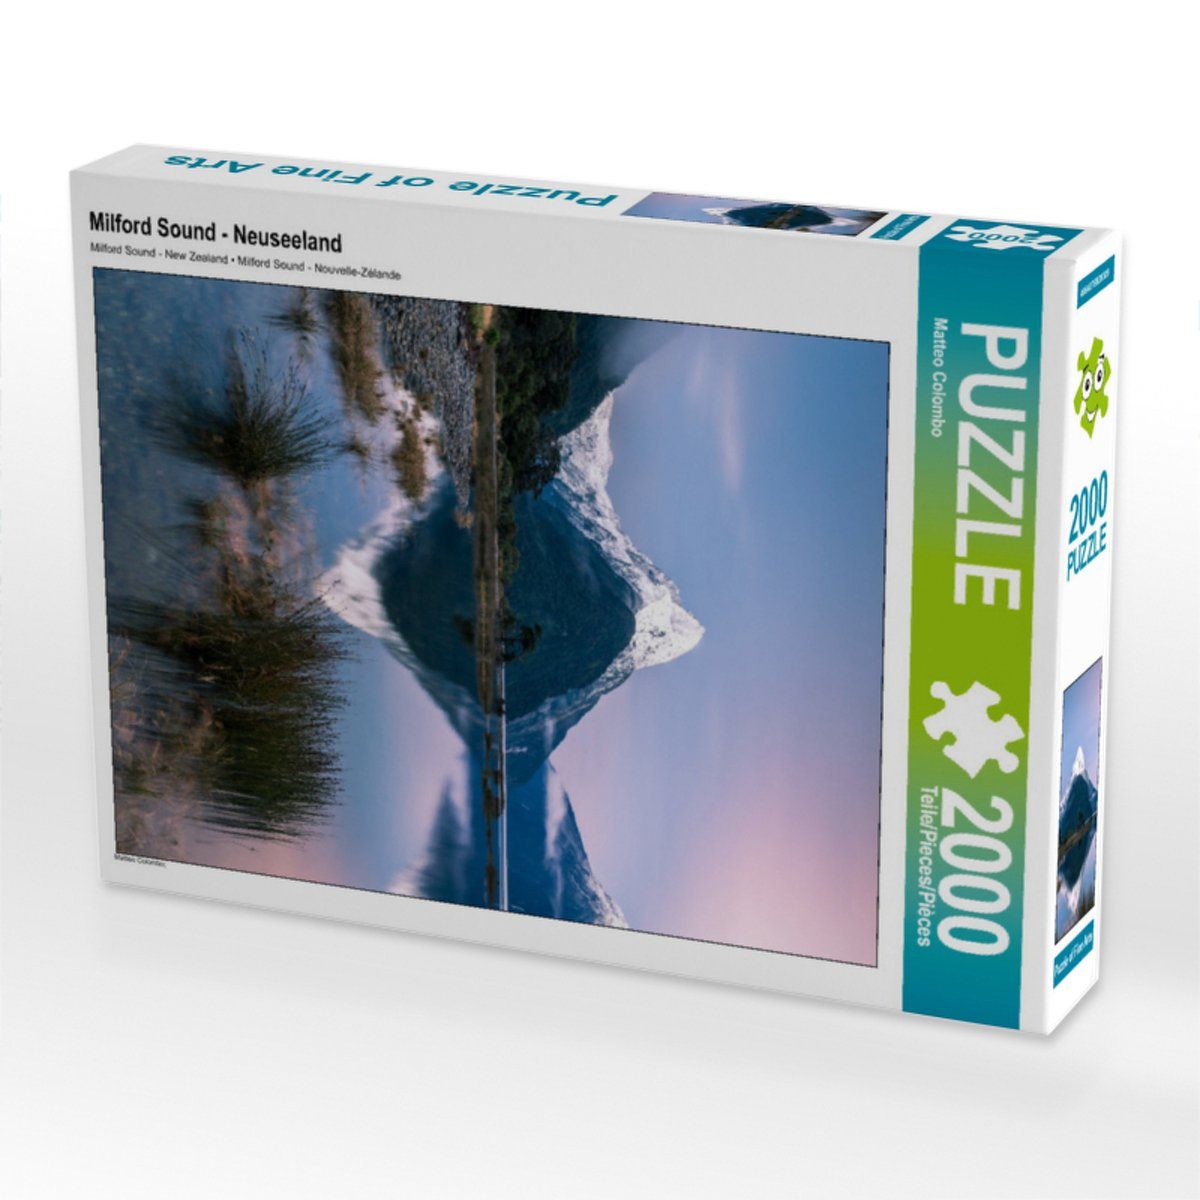 Puzzle Teile 90 Bild Foto-Puzzle Puzzleteile - 2000 x Puzzle CALVENDO Neuseeland Sound CALVENDO 67 Lege-Größe Milford Colombo, cm 2000 von Matteo